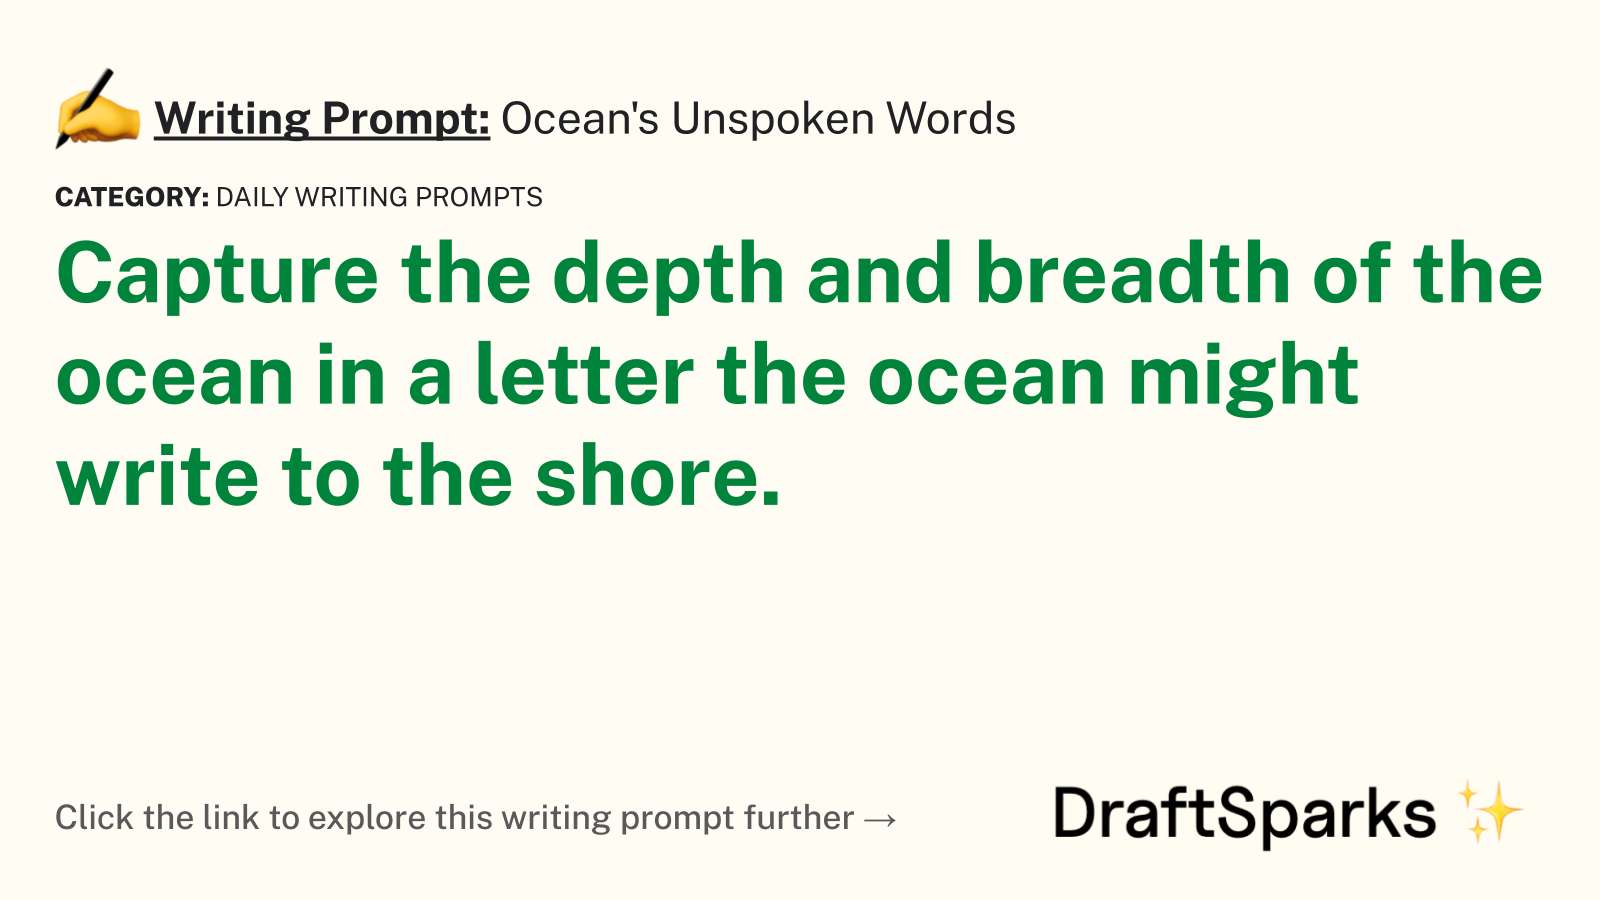 Ocean’s Unspoken Words